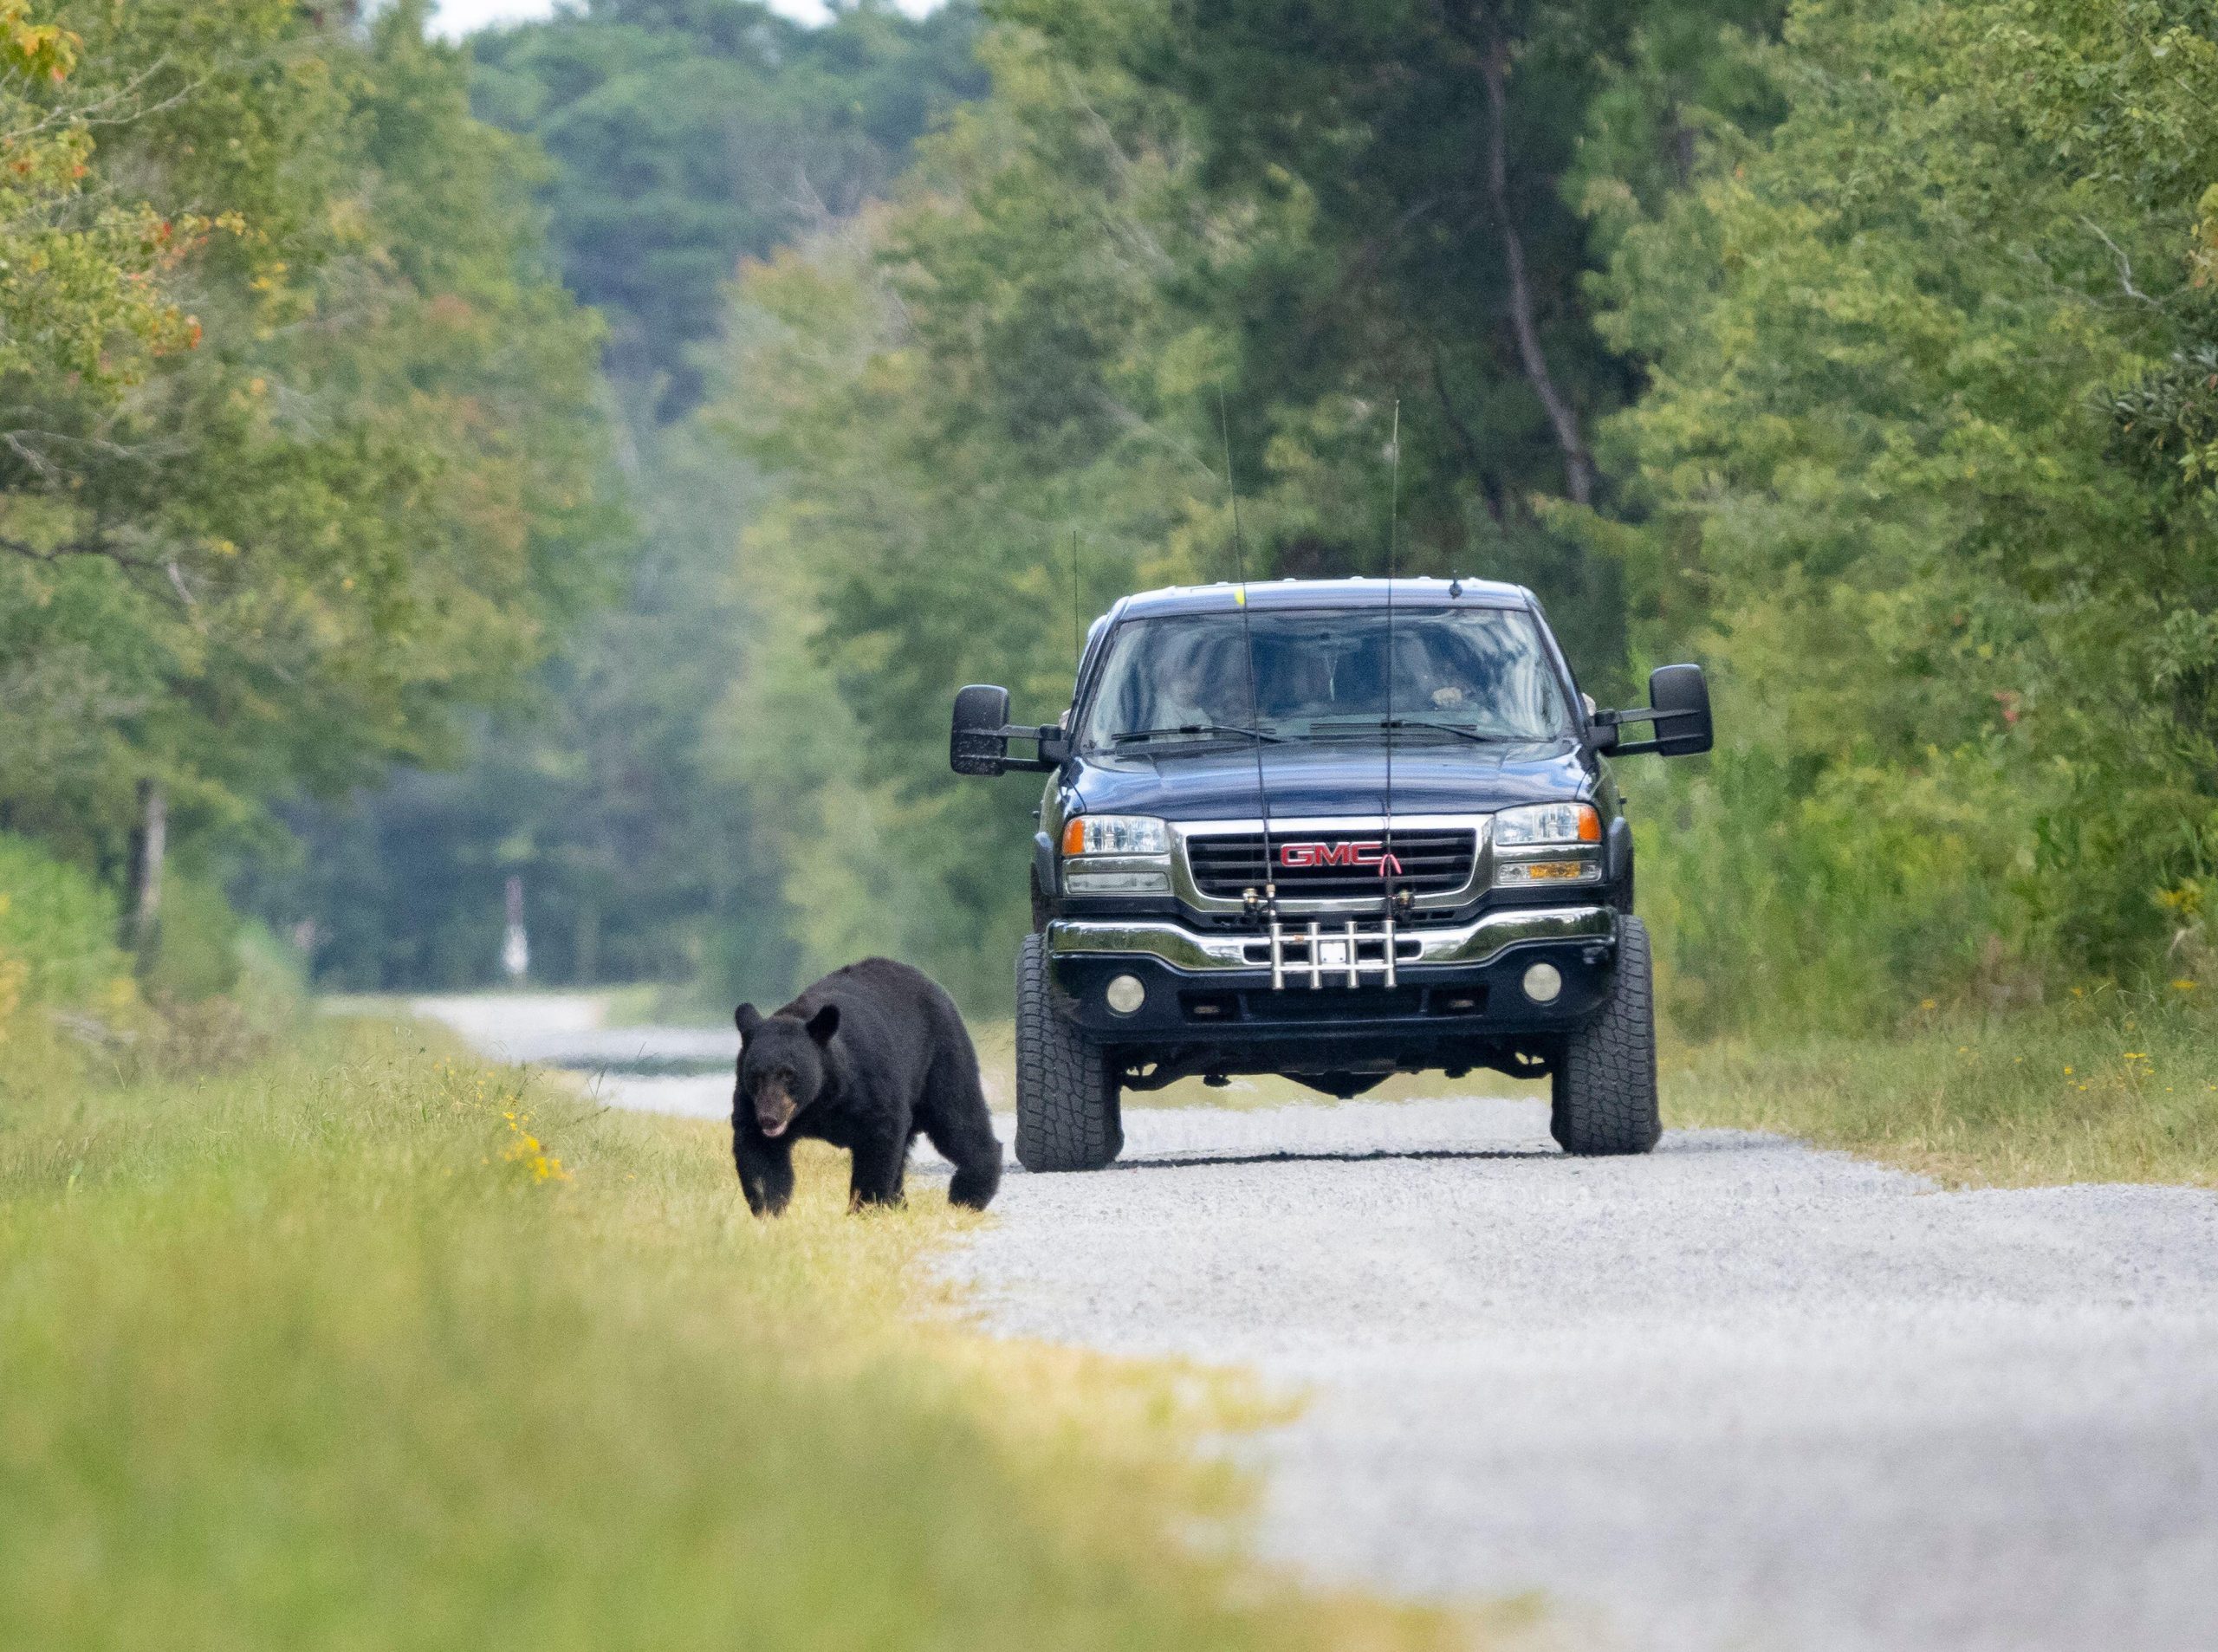 Inseguire gli orsi in auto è un reato». Avvertimento del Servizio foreste Trentino - Petme